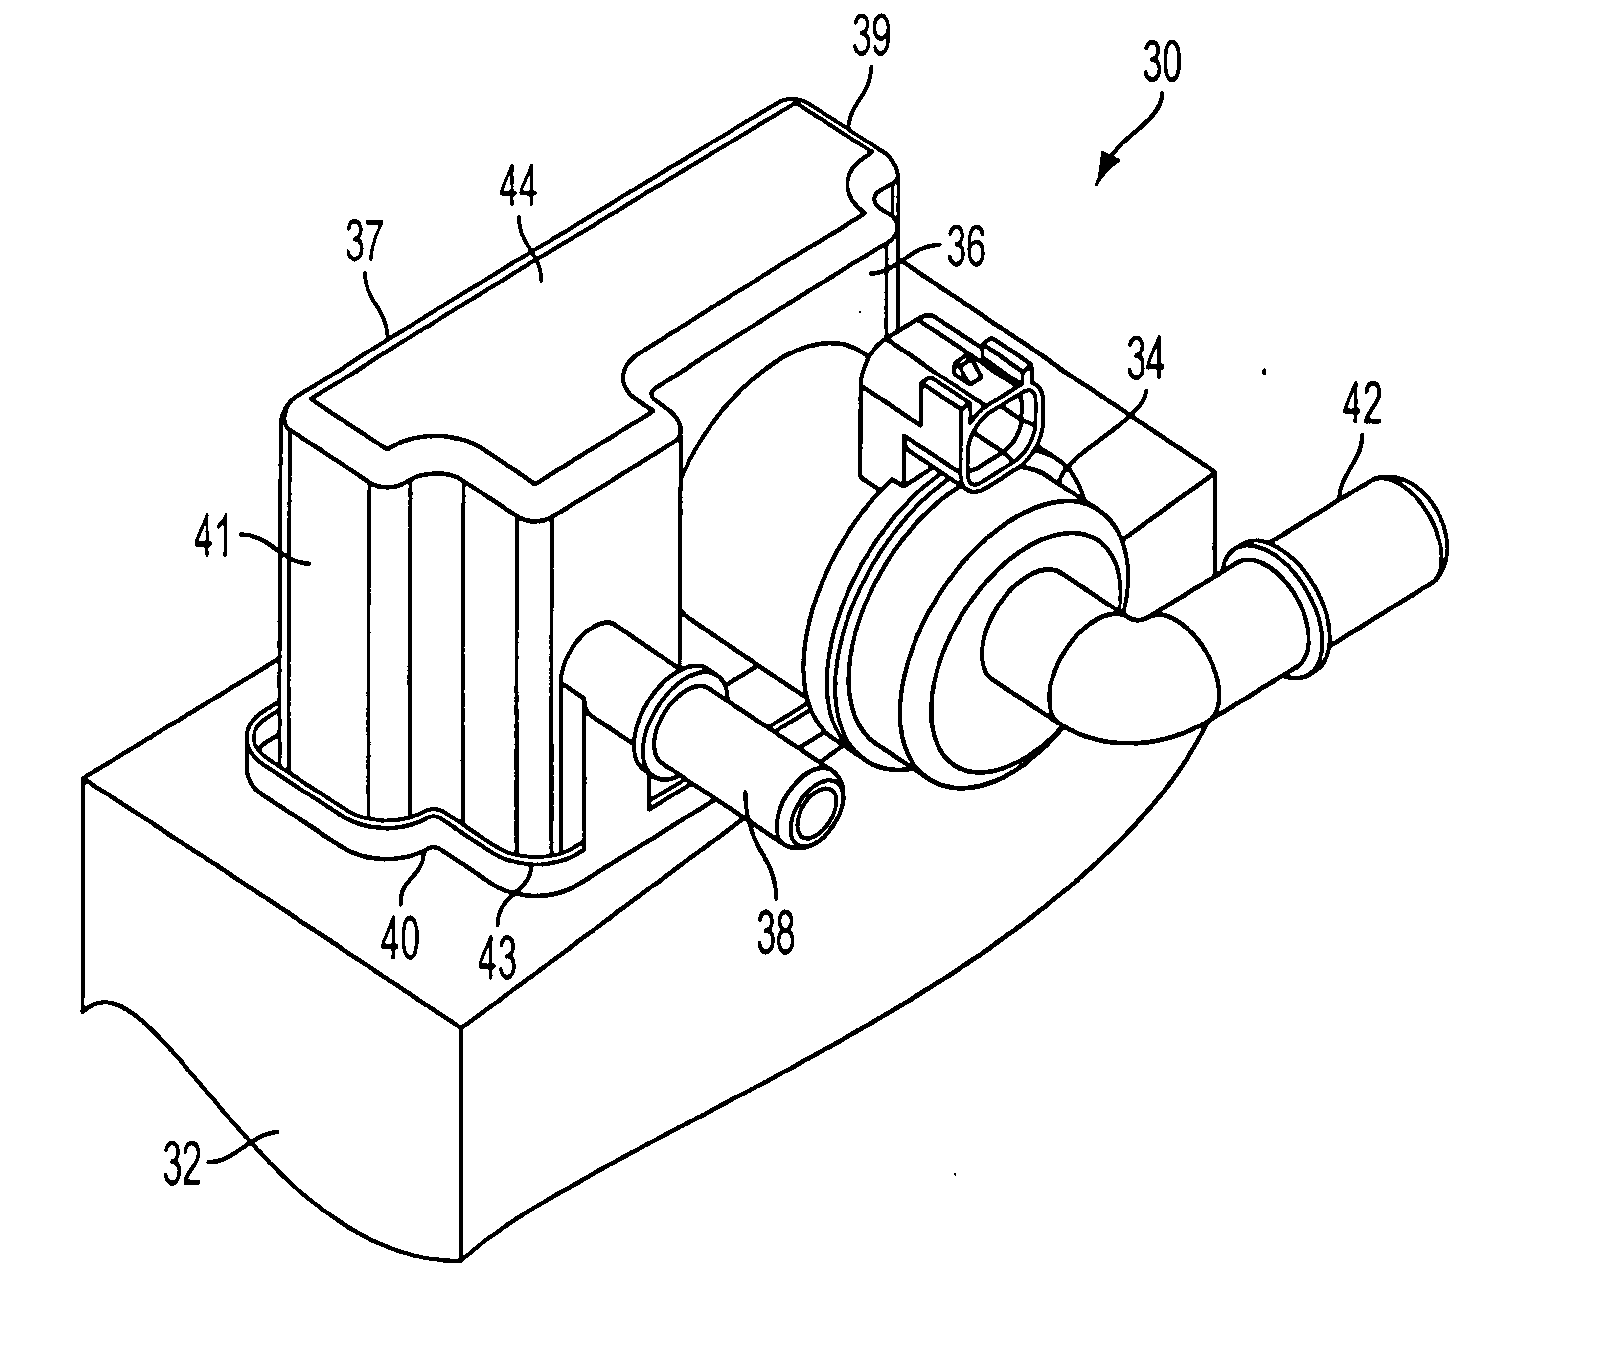 Integrated vacuum blocking valve